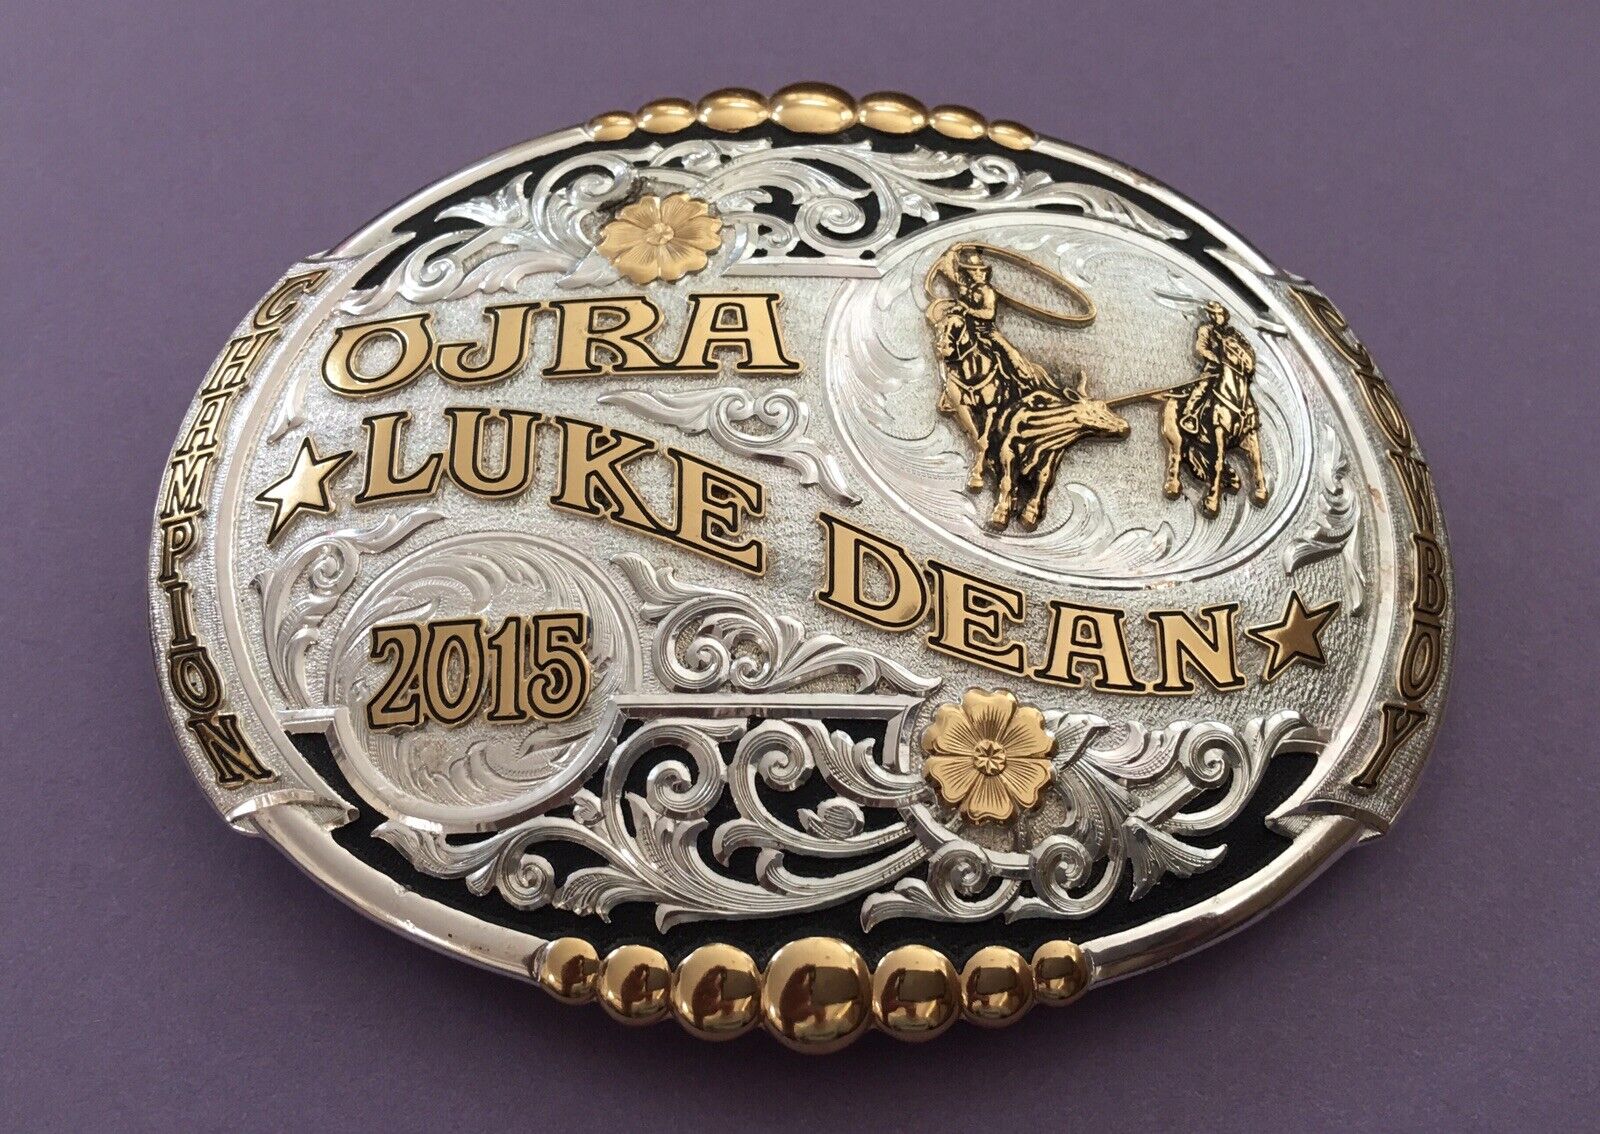 Vintage NOS Huge Premium Gist USA 2015 OJRA Rodeo Cowboy Trophy Belt Buckle